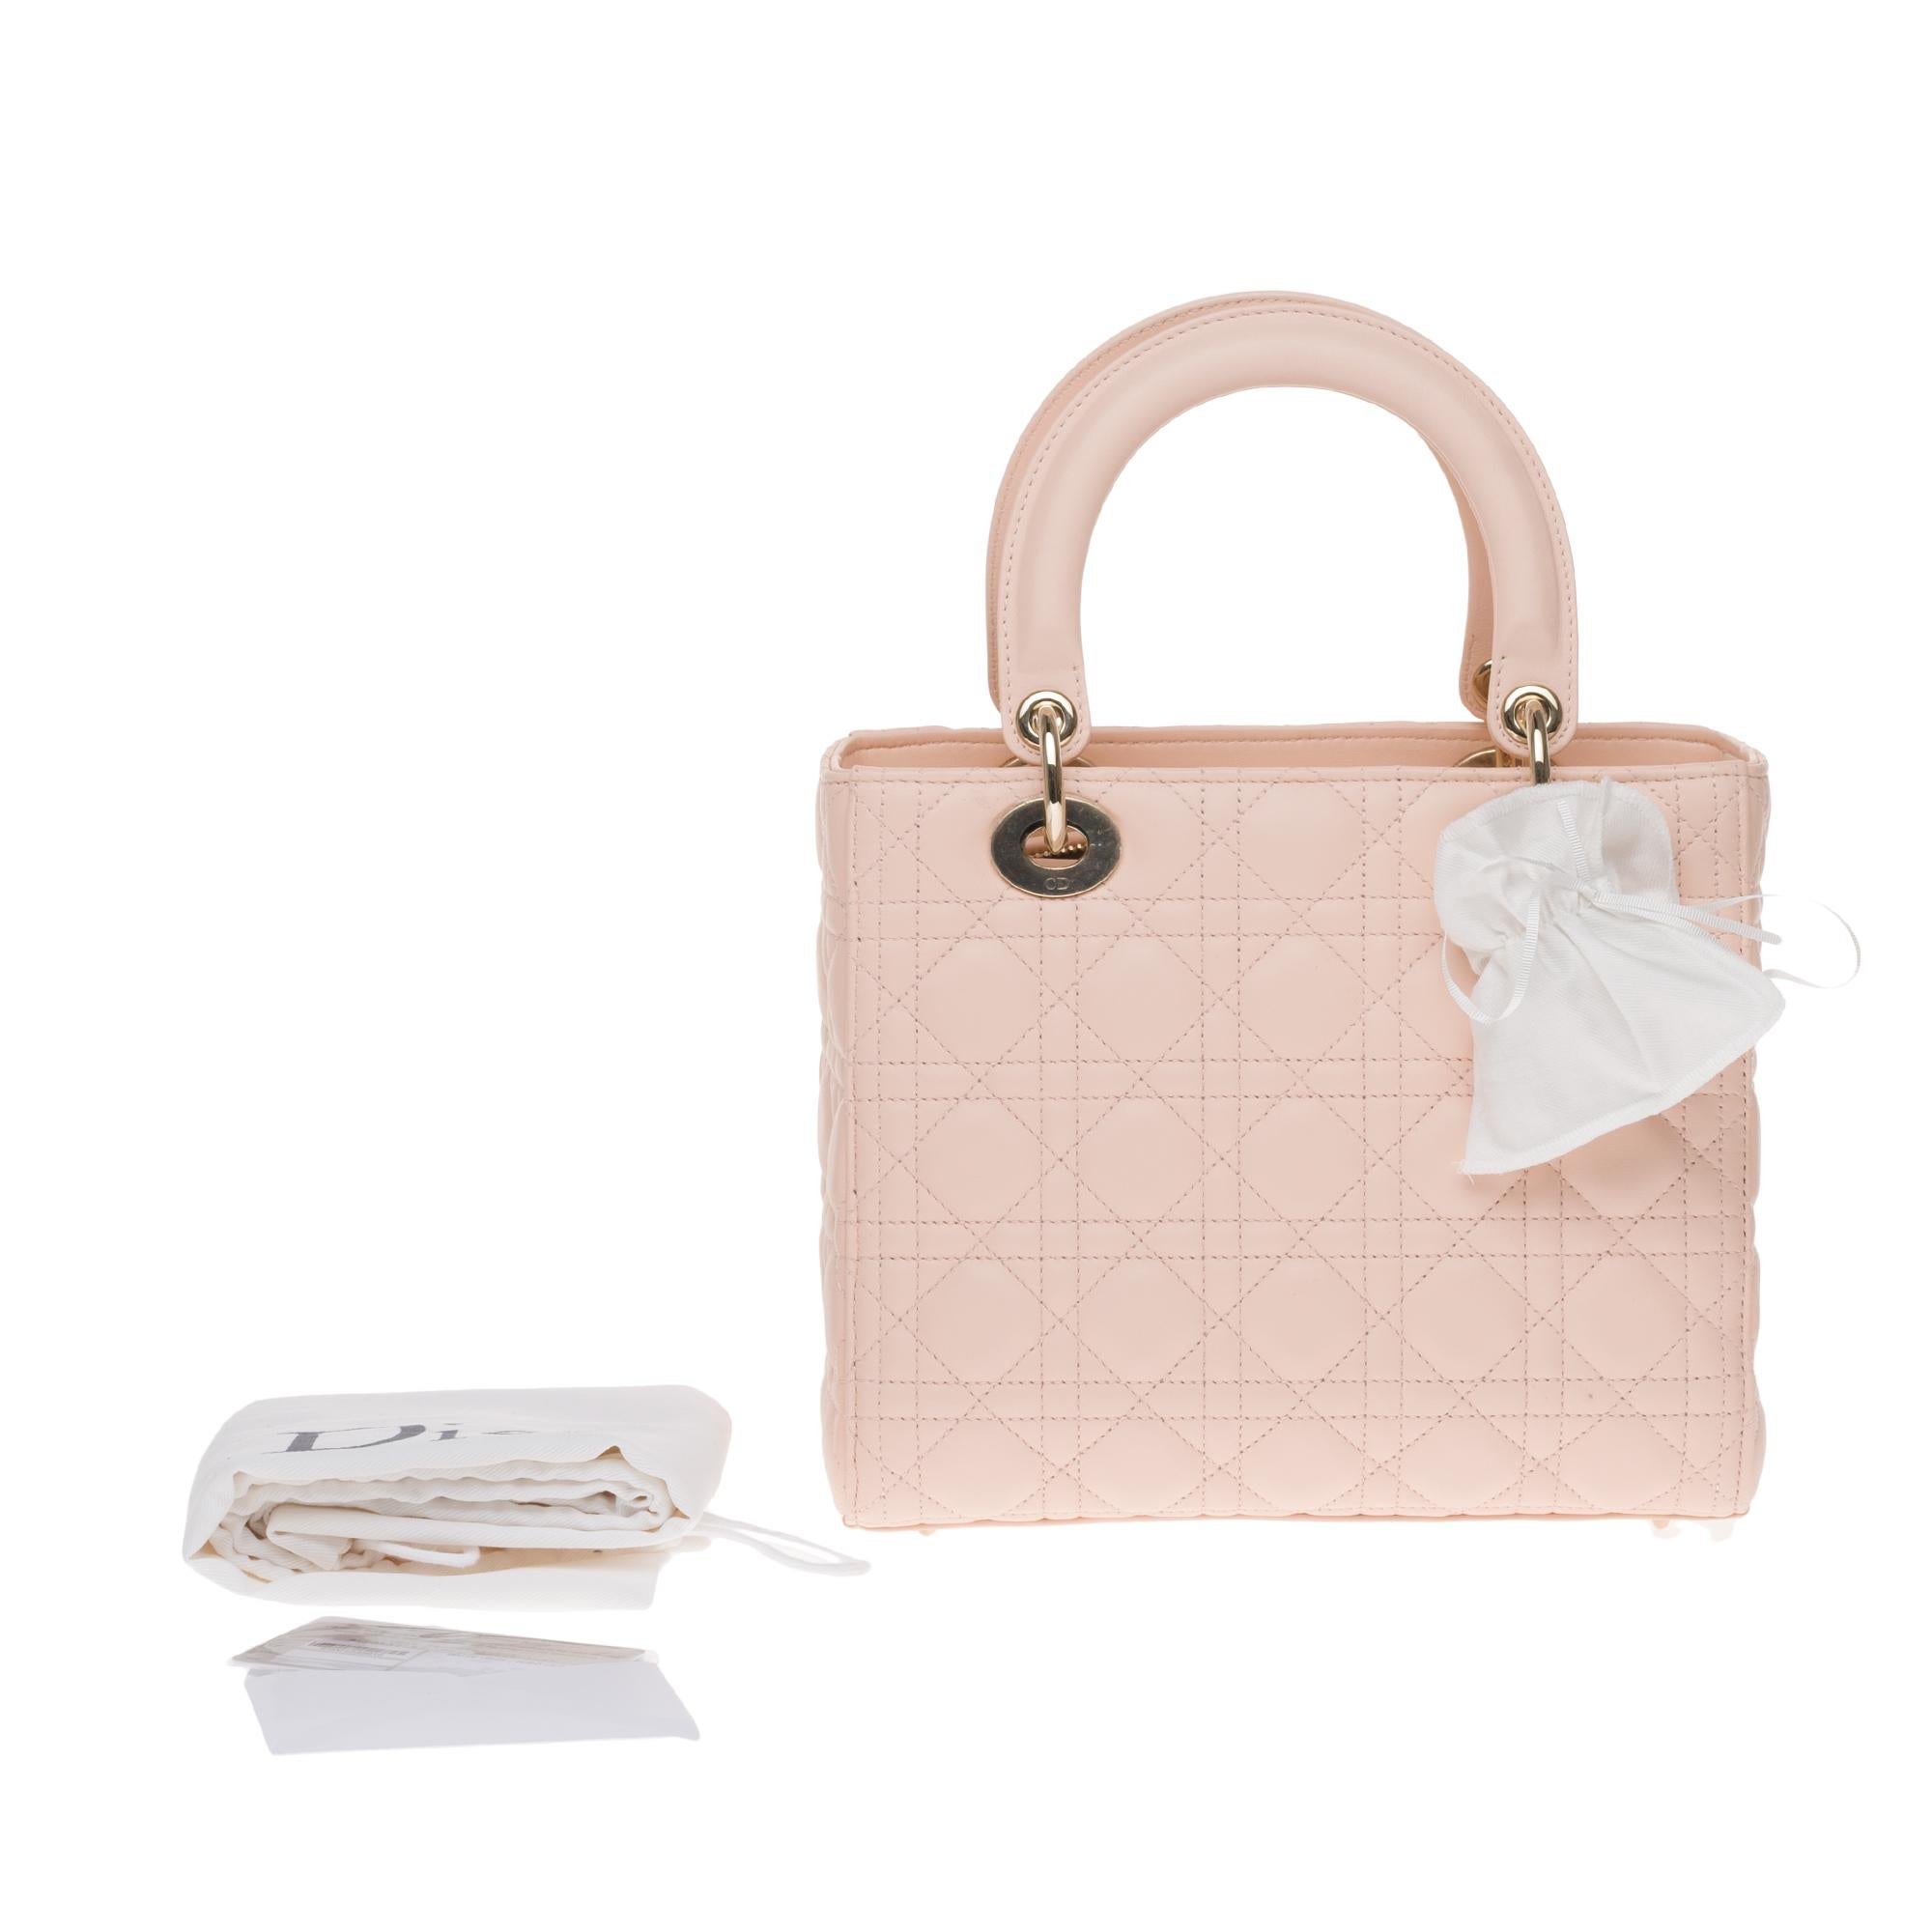  Christian Dior Lady Dior MM (Medium size) handbag in Pink cannage leather, GHW 5